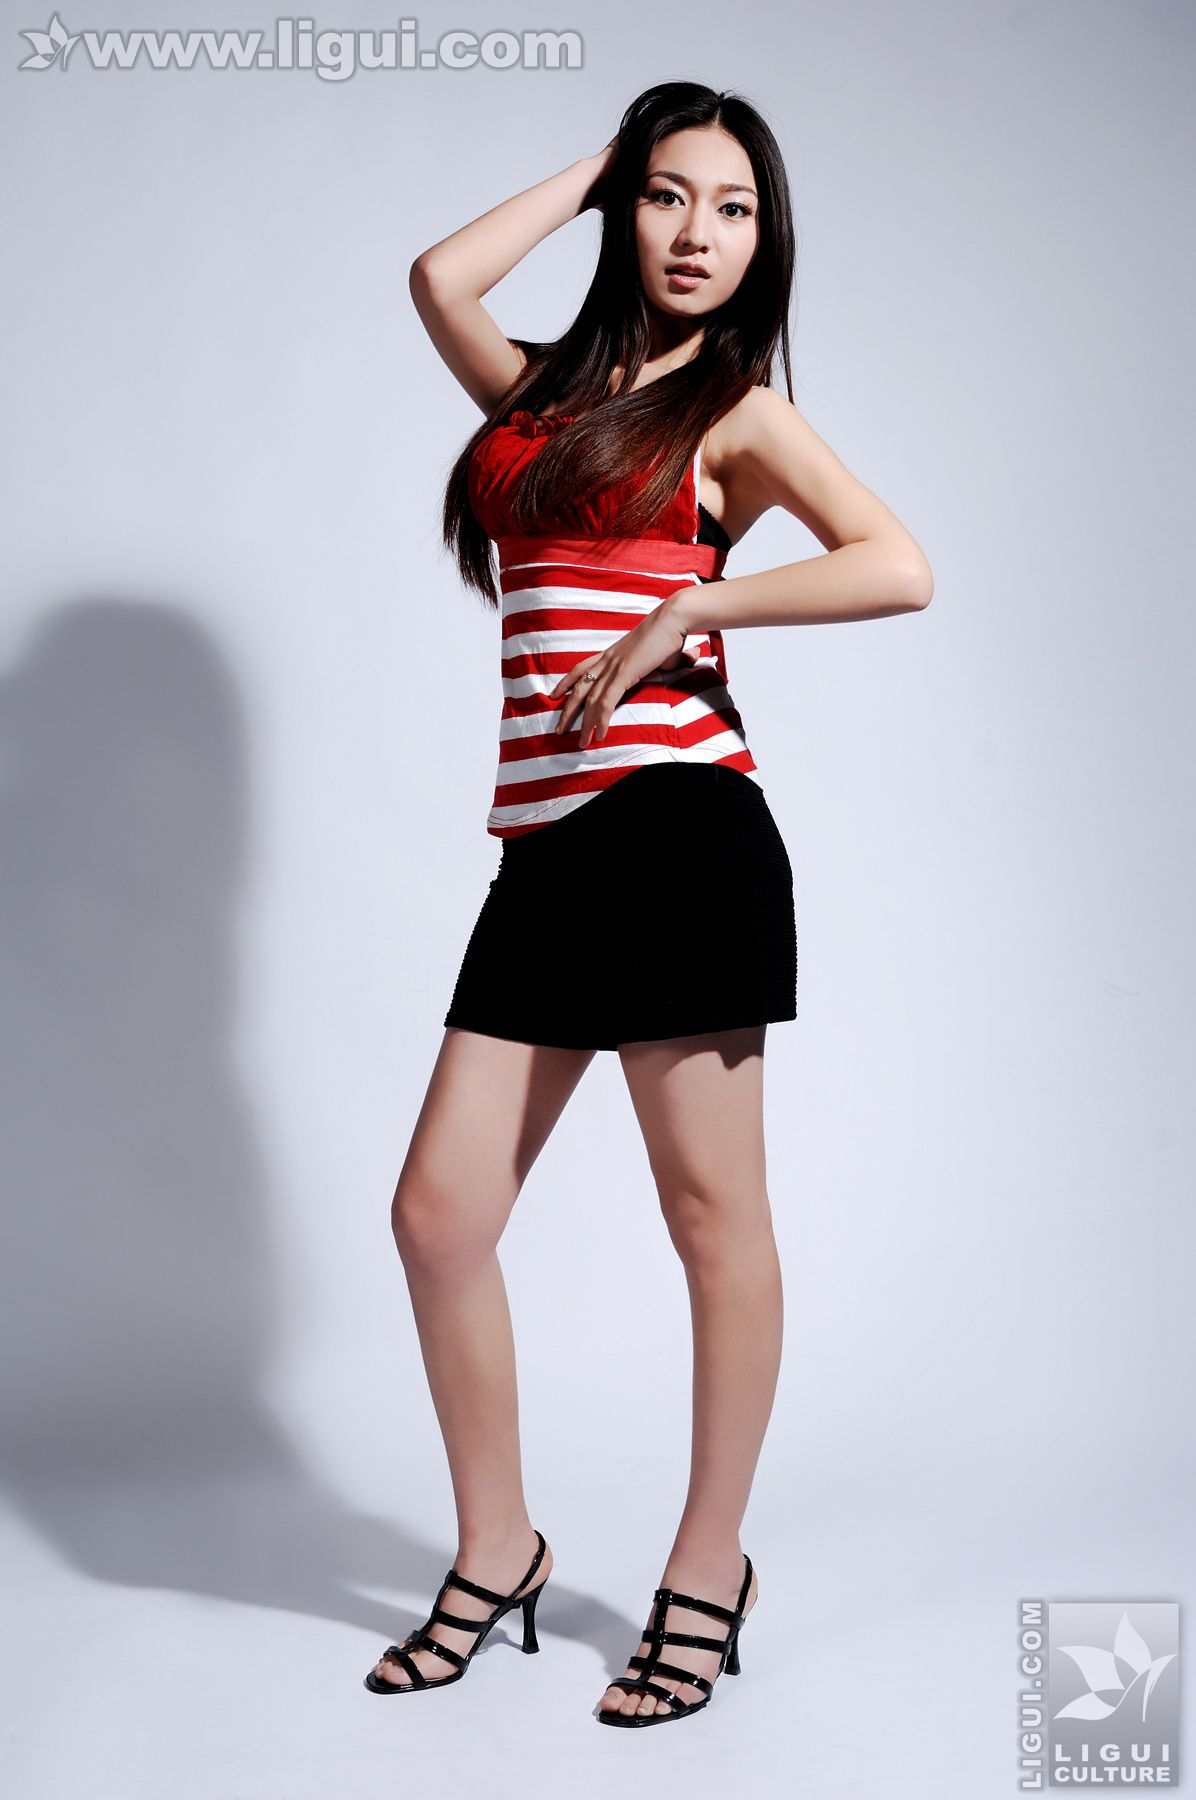 Model Tang Jing "Das glückliche Leben einer weiblichen Fitnesstrainerin" [丽 柜 LiGui] Foto von schönen Beinen und Jadefüßen Seite 14 No.9d40ec